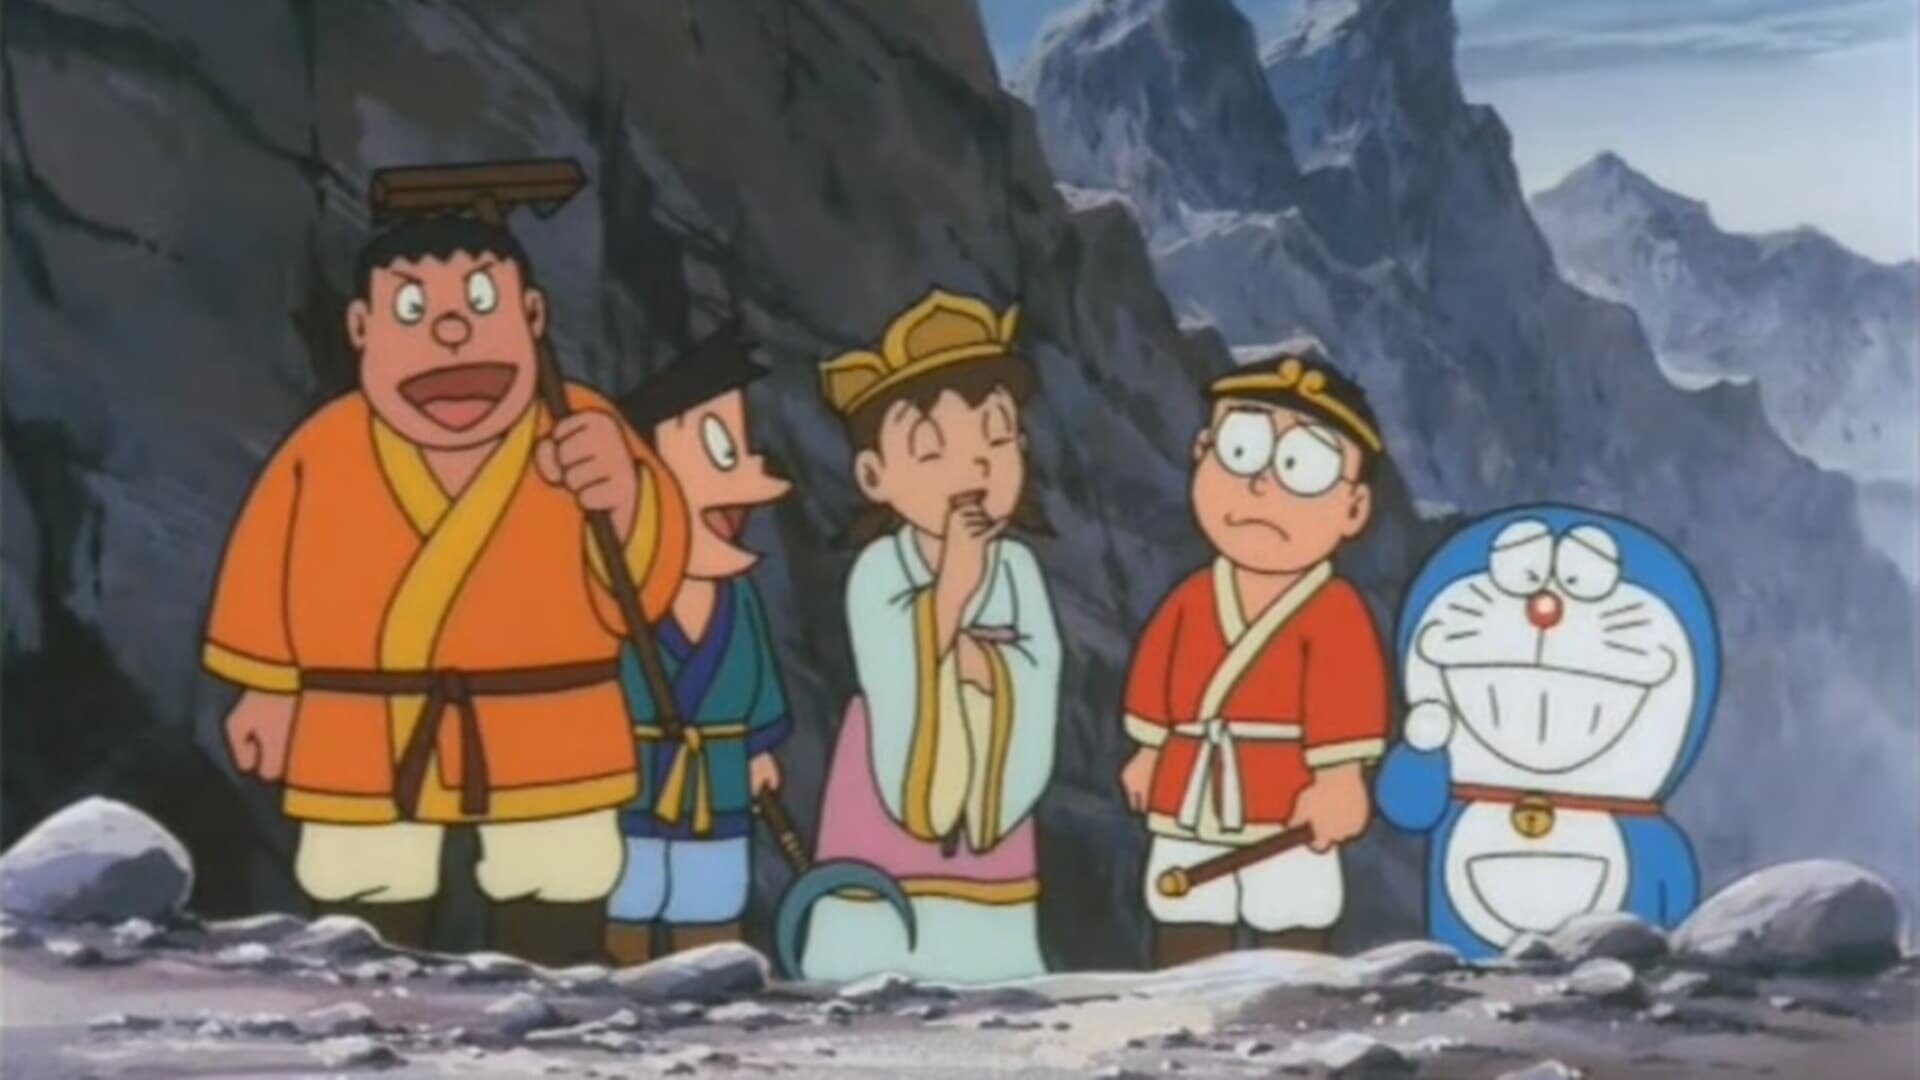 Doraemon e a Viagem à China Antiga